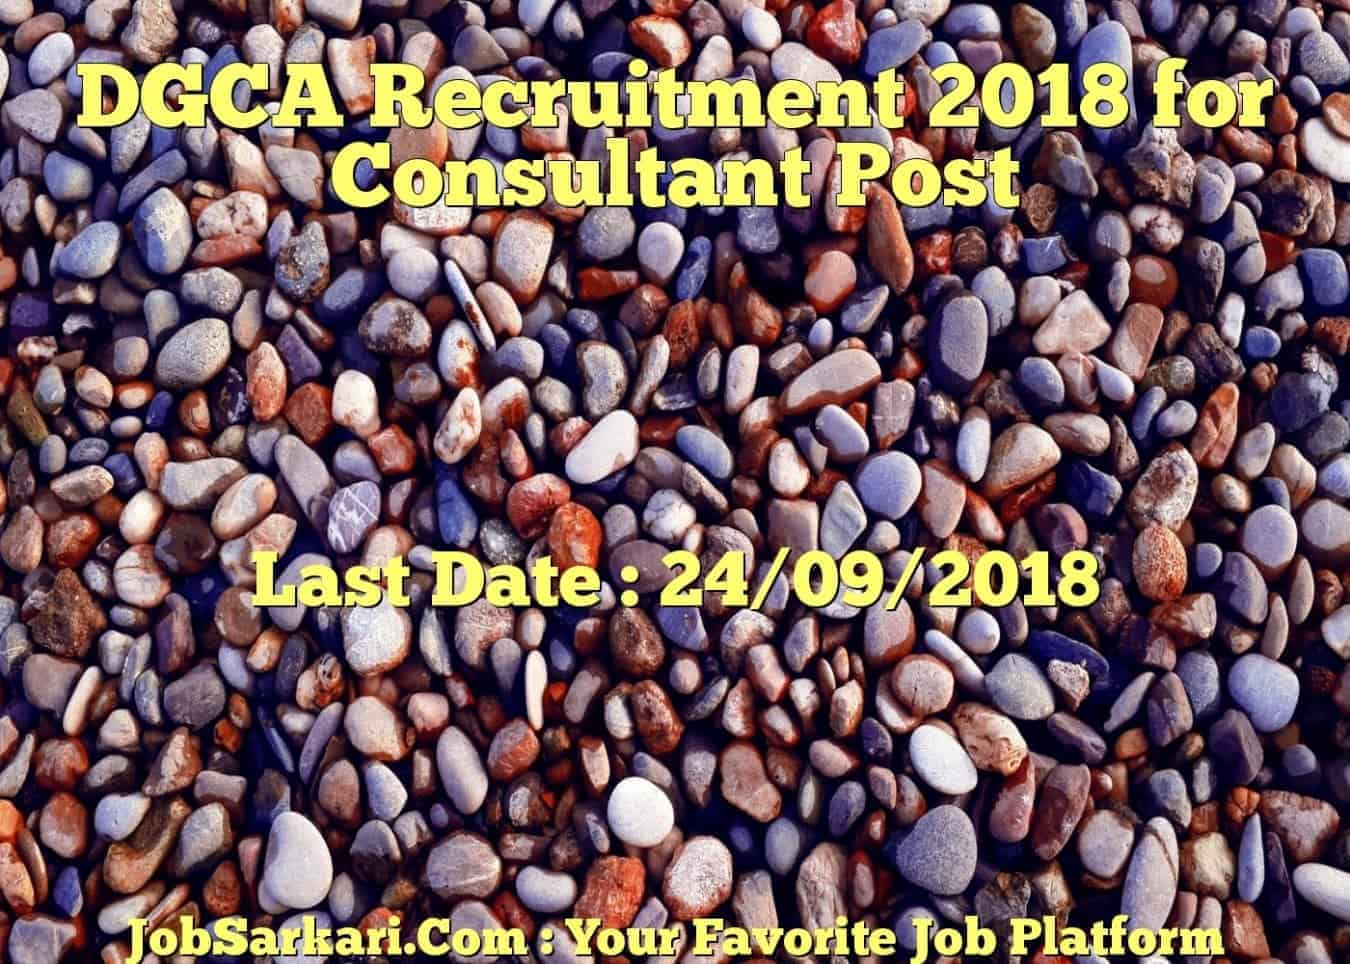 DGCA Recruitment 2018 for Consultant Post